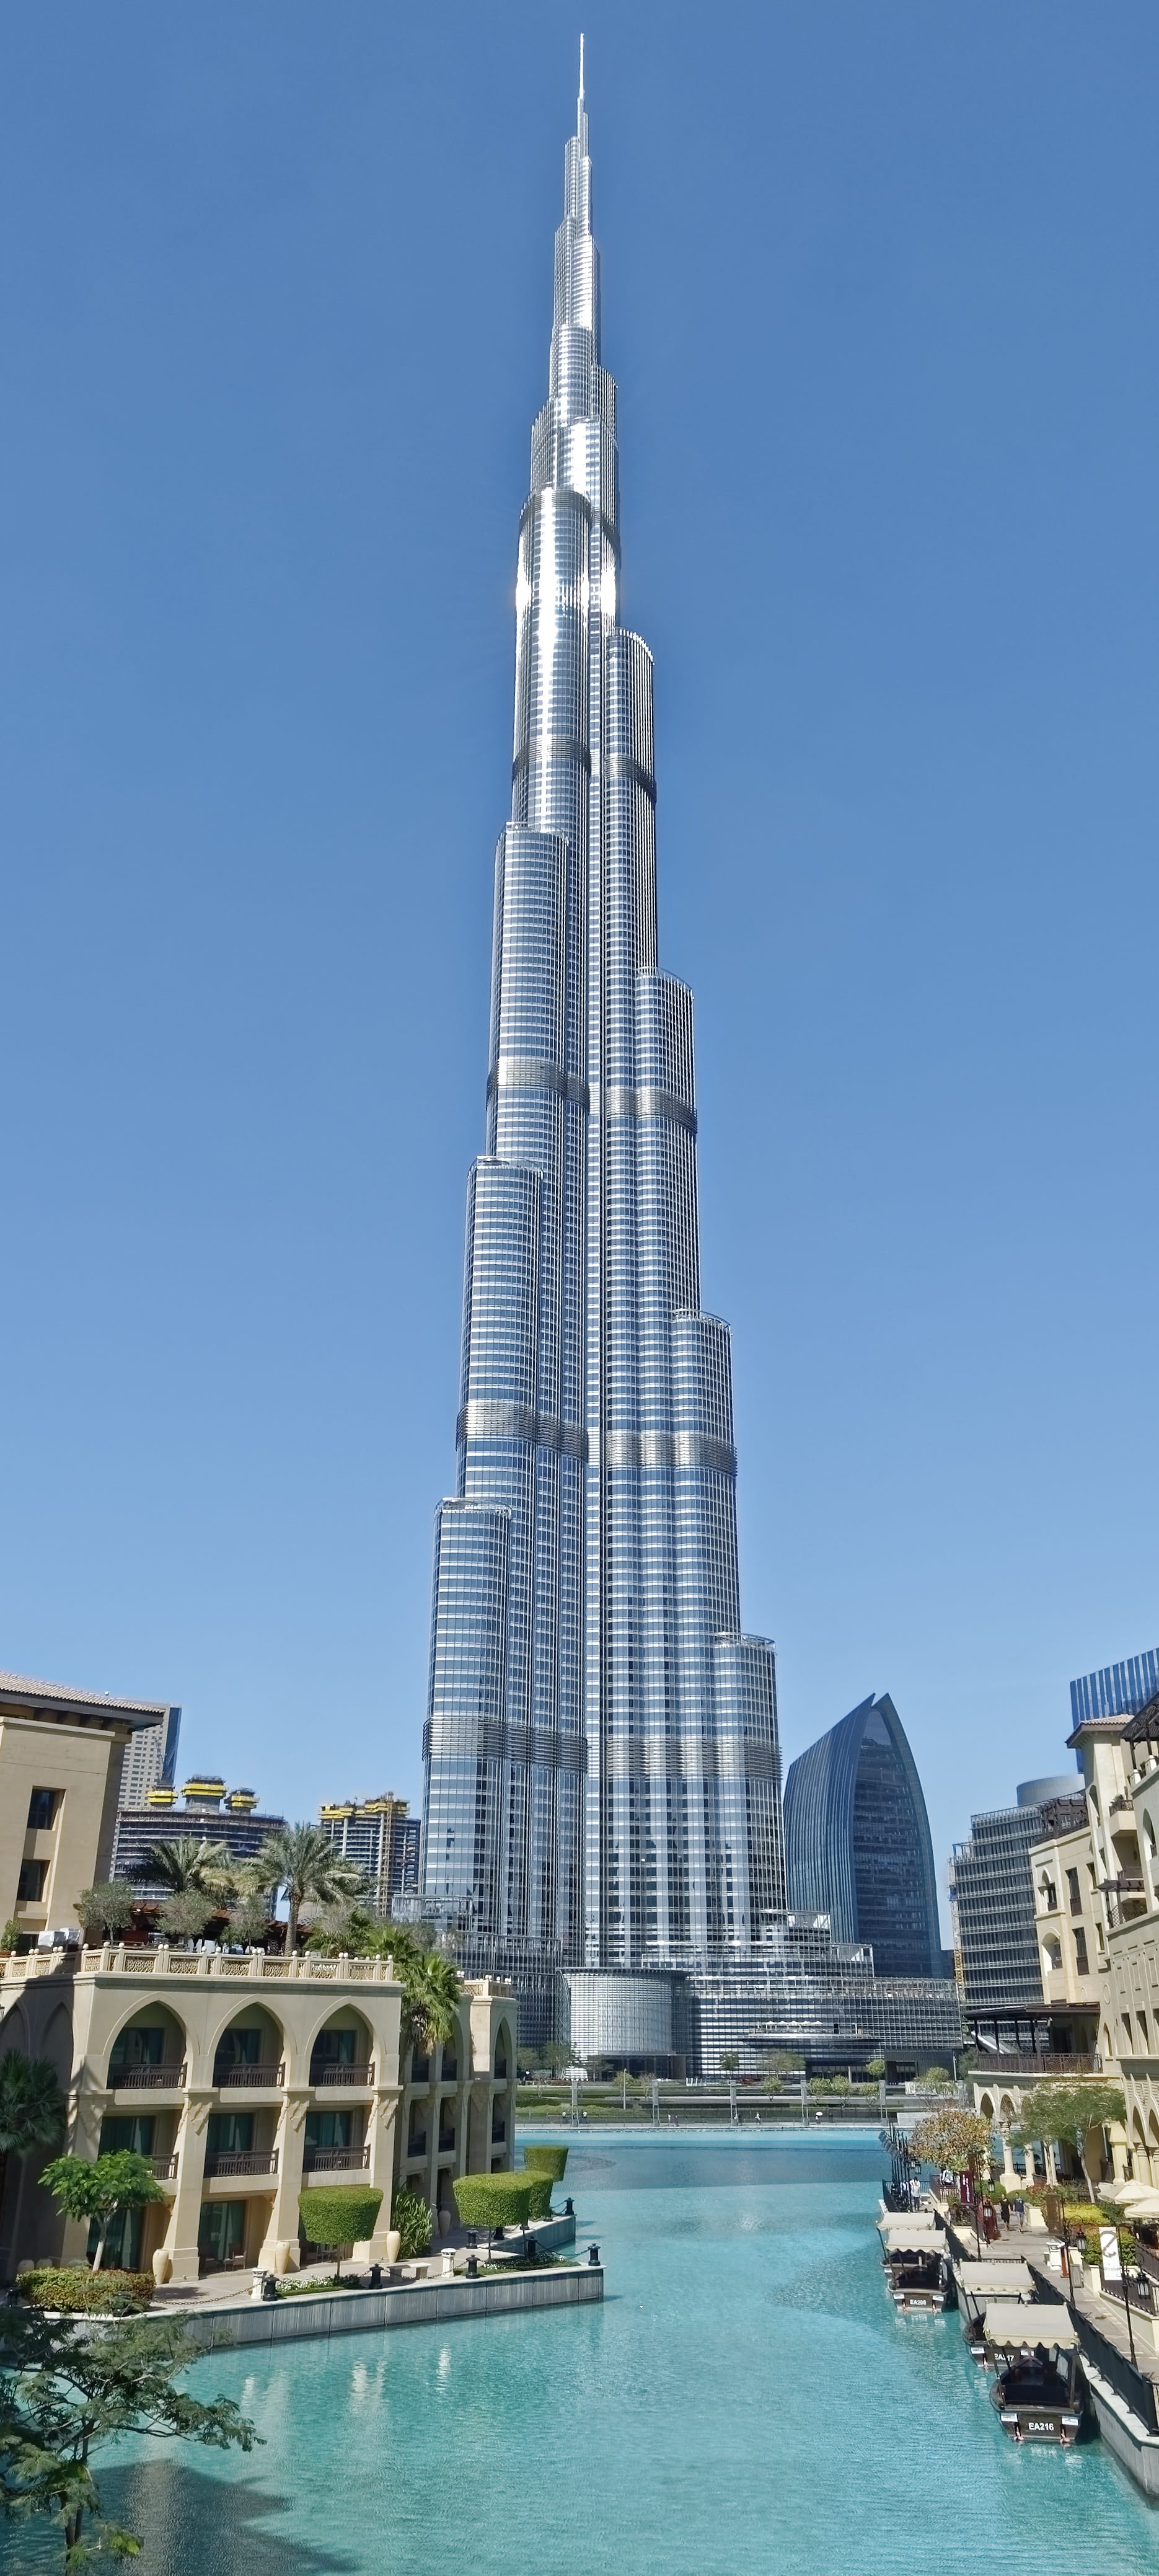 u a e, dubai, burj khalifa, architecture, city, building, skyscraper